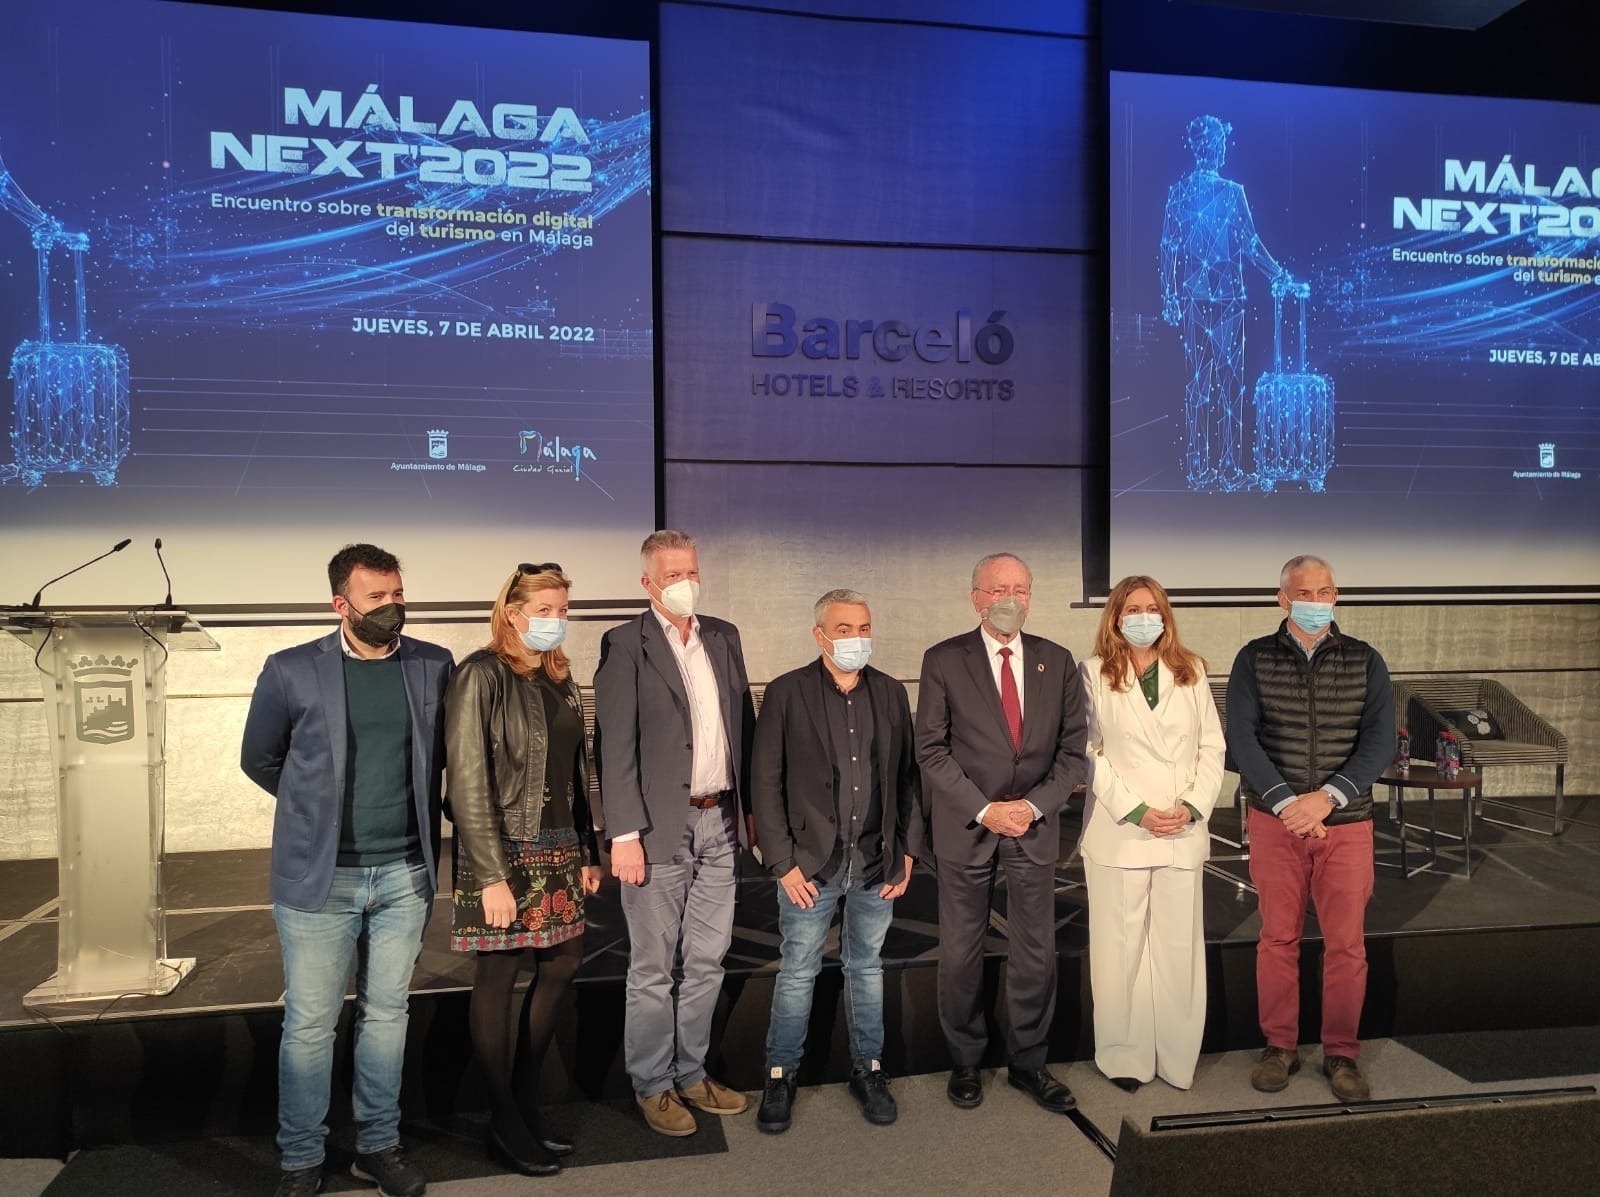 Representatives Malaga next '2022